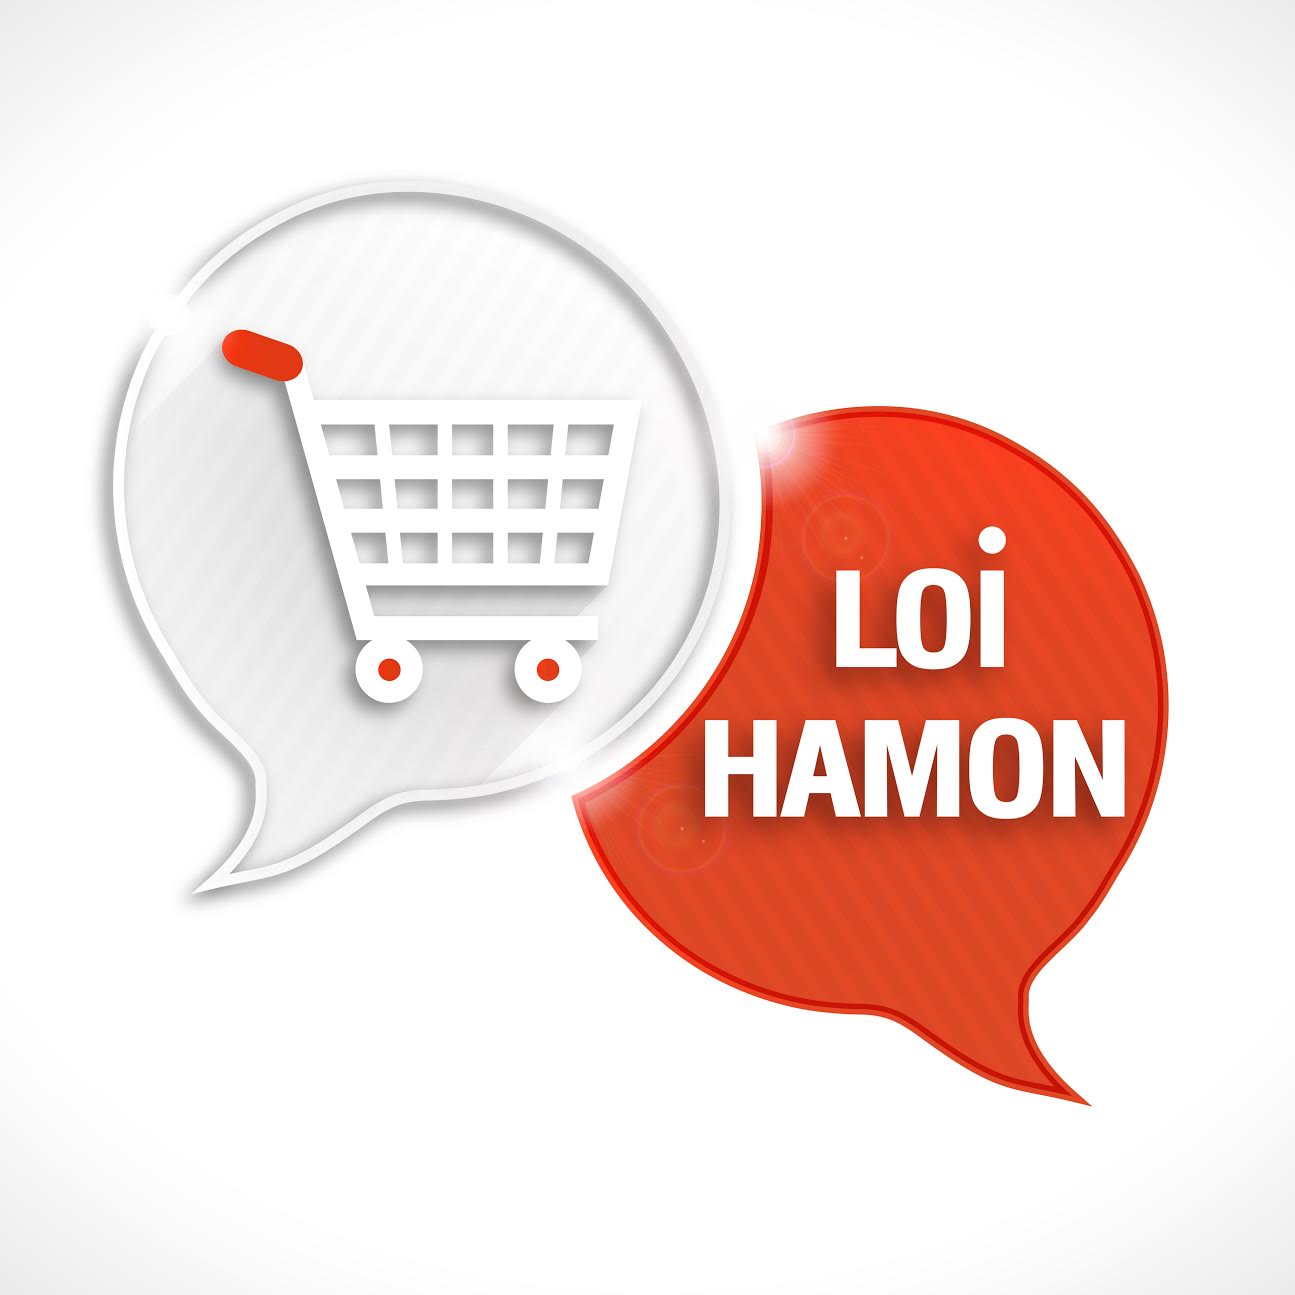 Loi Hamon assurance : garder un oeil sur les offres